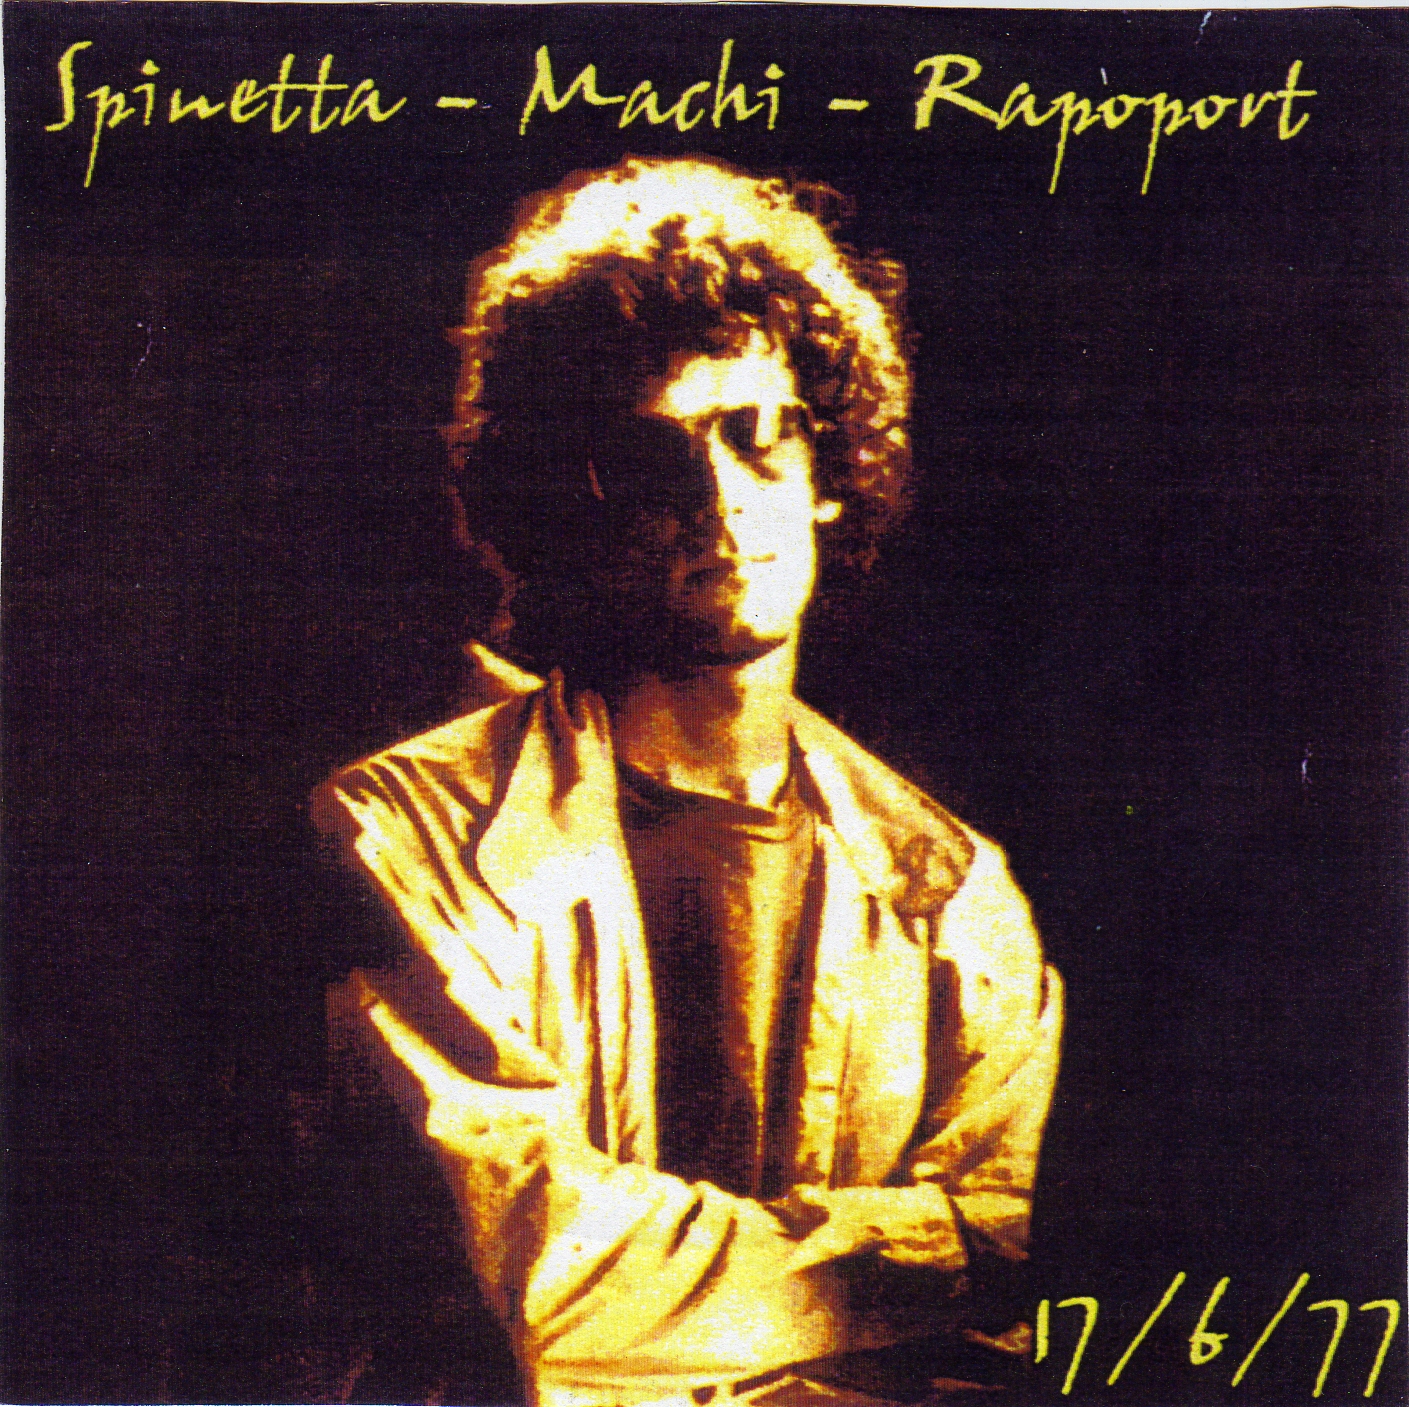 [Spinetta+1977+06+17+Spinetta+Machi+Rapoport+Teatro+Lasalle+021.jpg]